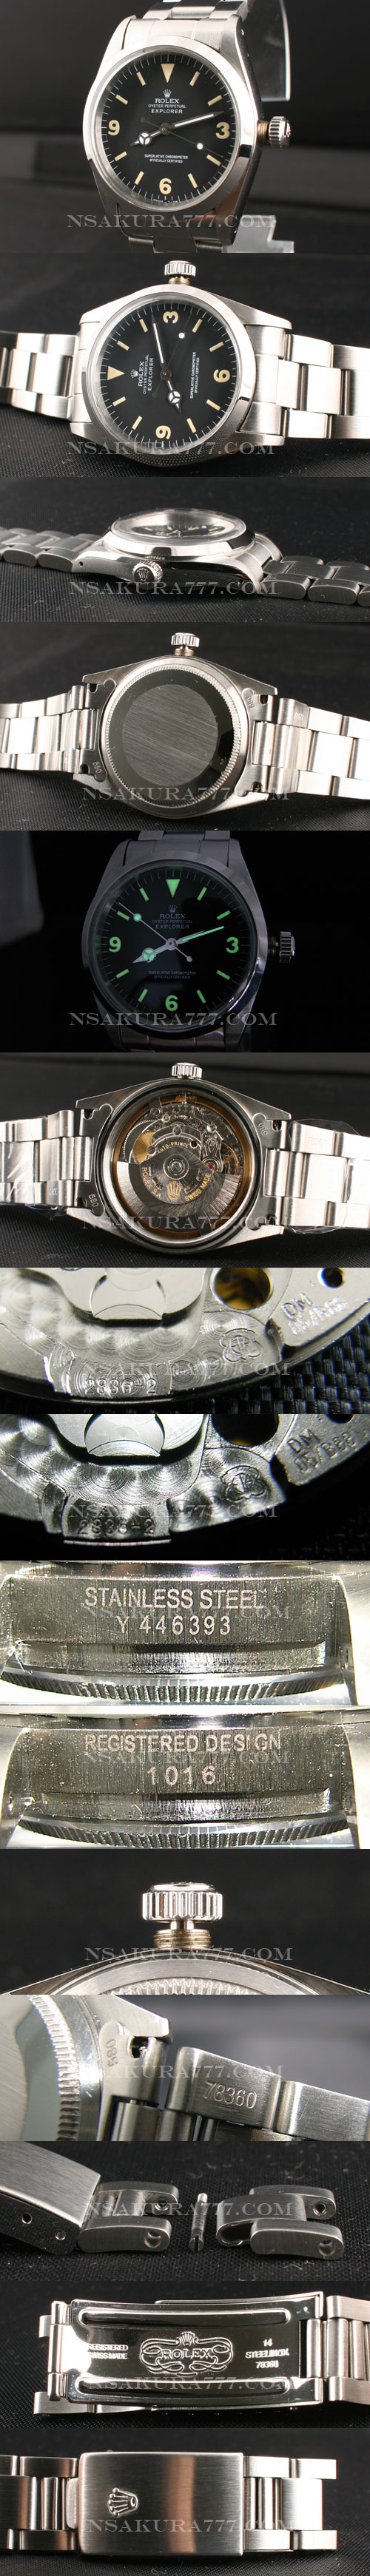 スーパーコピー時計ロレックス最新改良白2836-2搭載 - ウインドウを閉じる